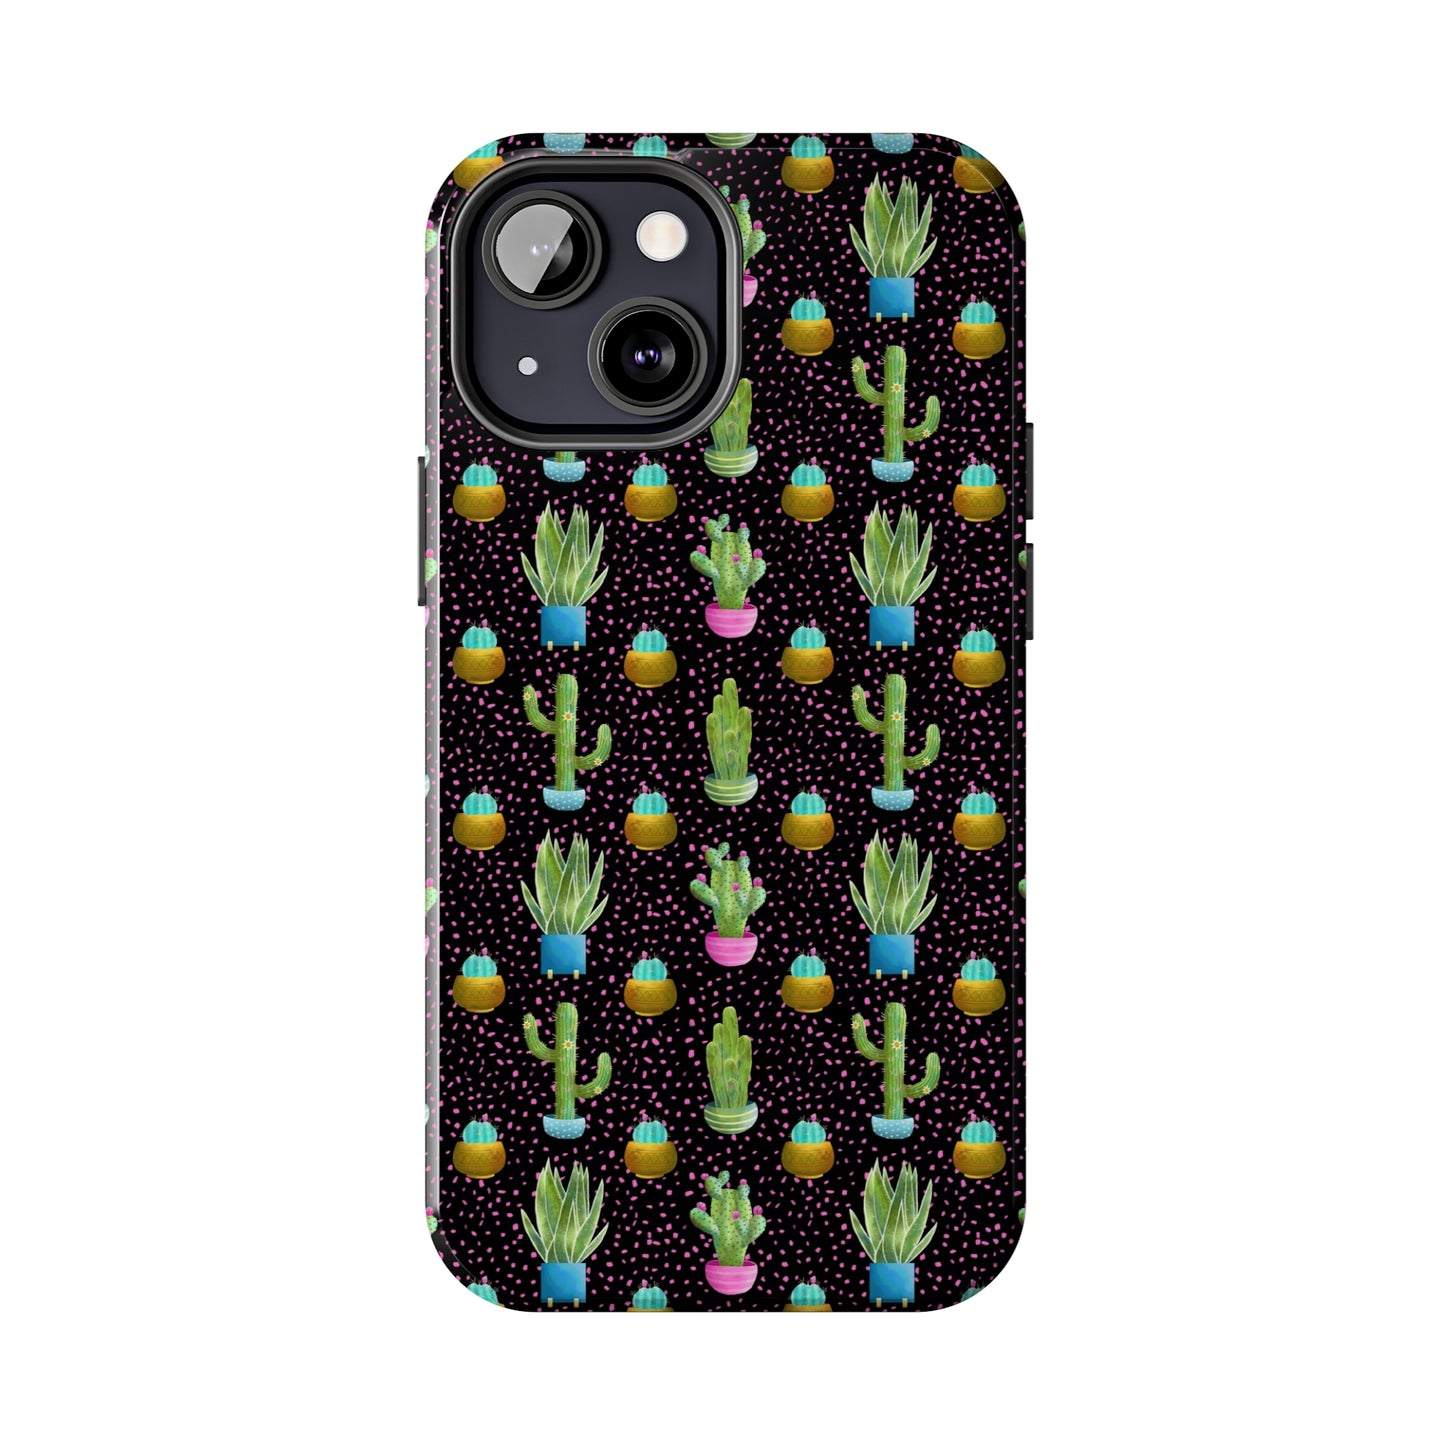 Frida Cactus Tough Phone Cases